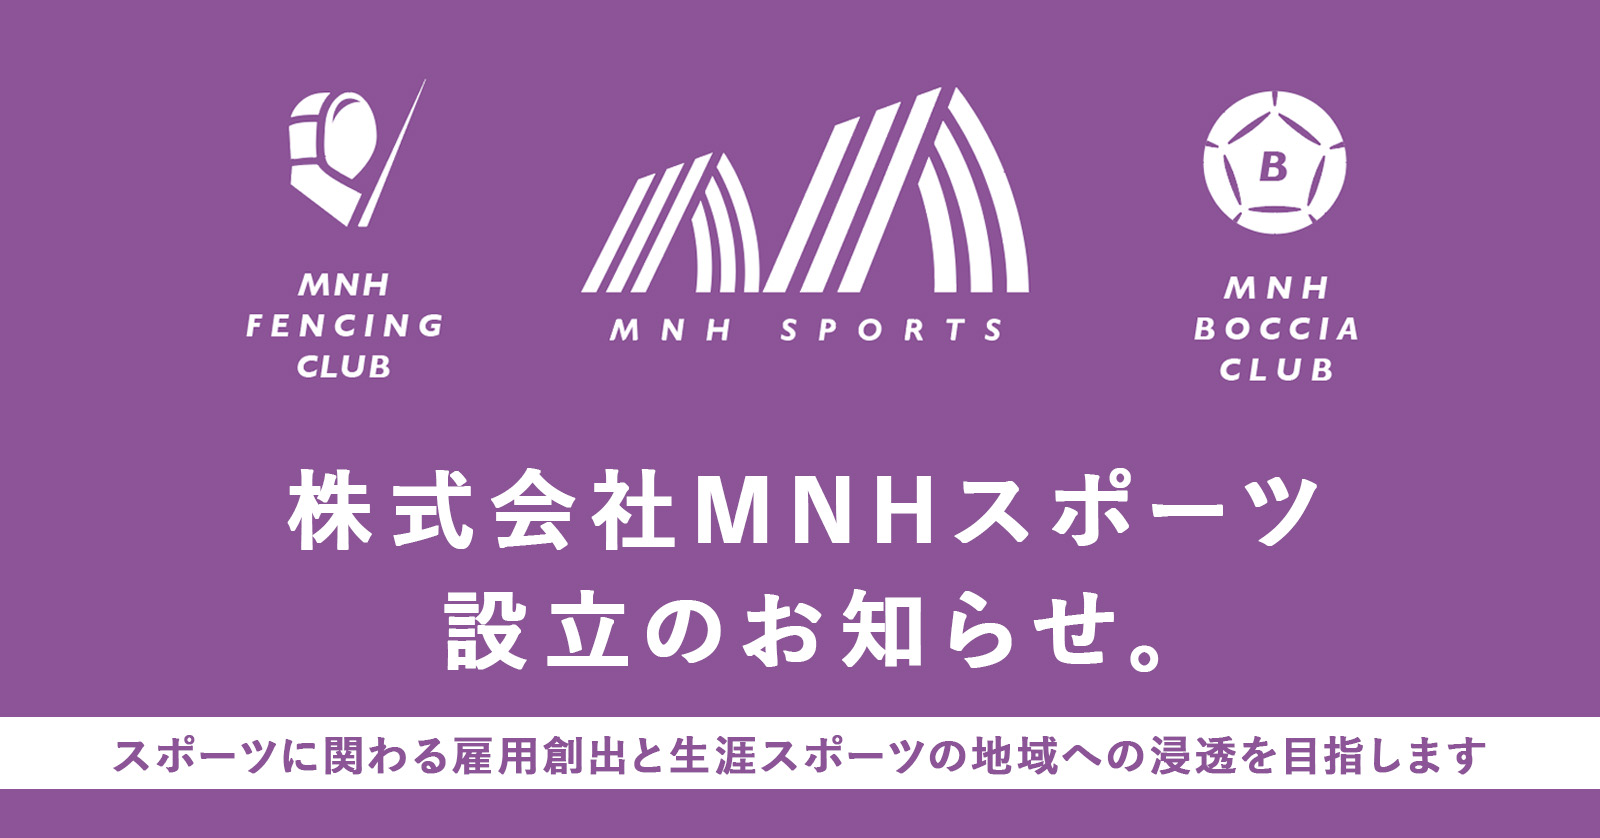 株式会社MNHスポーツ設立のお知らせ。スポーツに関わる雇用創出と生涯スポーツの地域への浸透を目指して